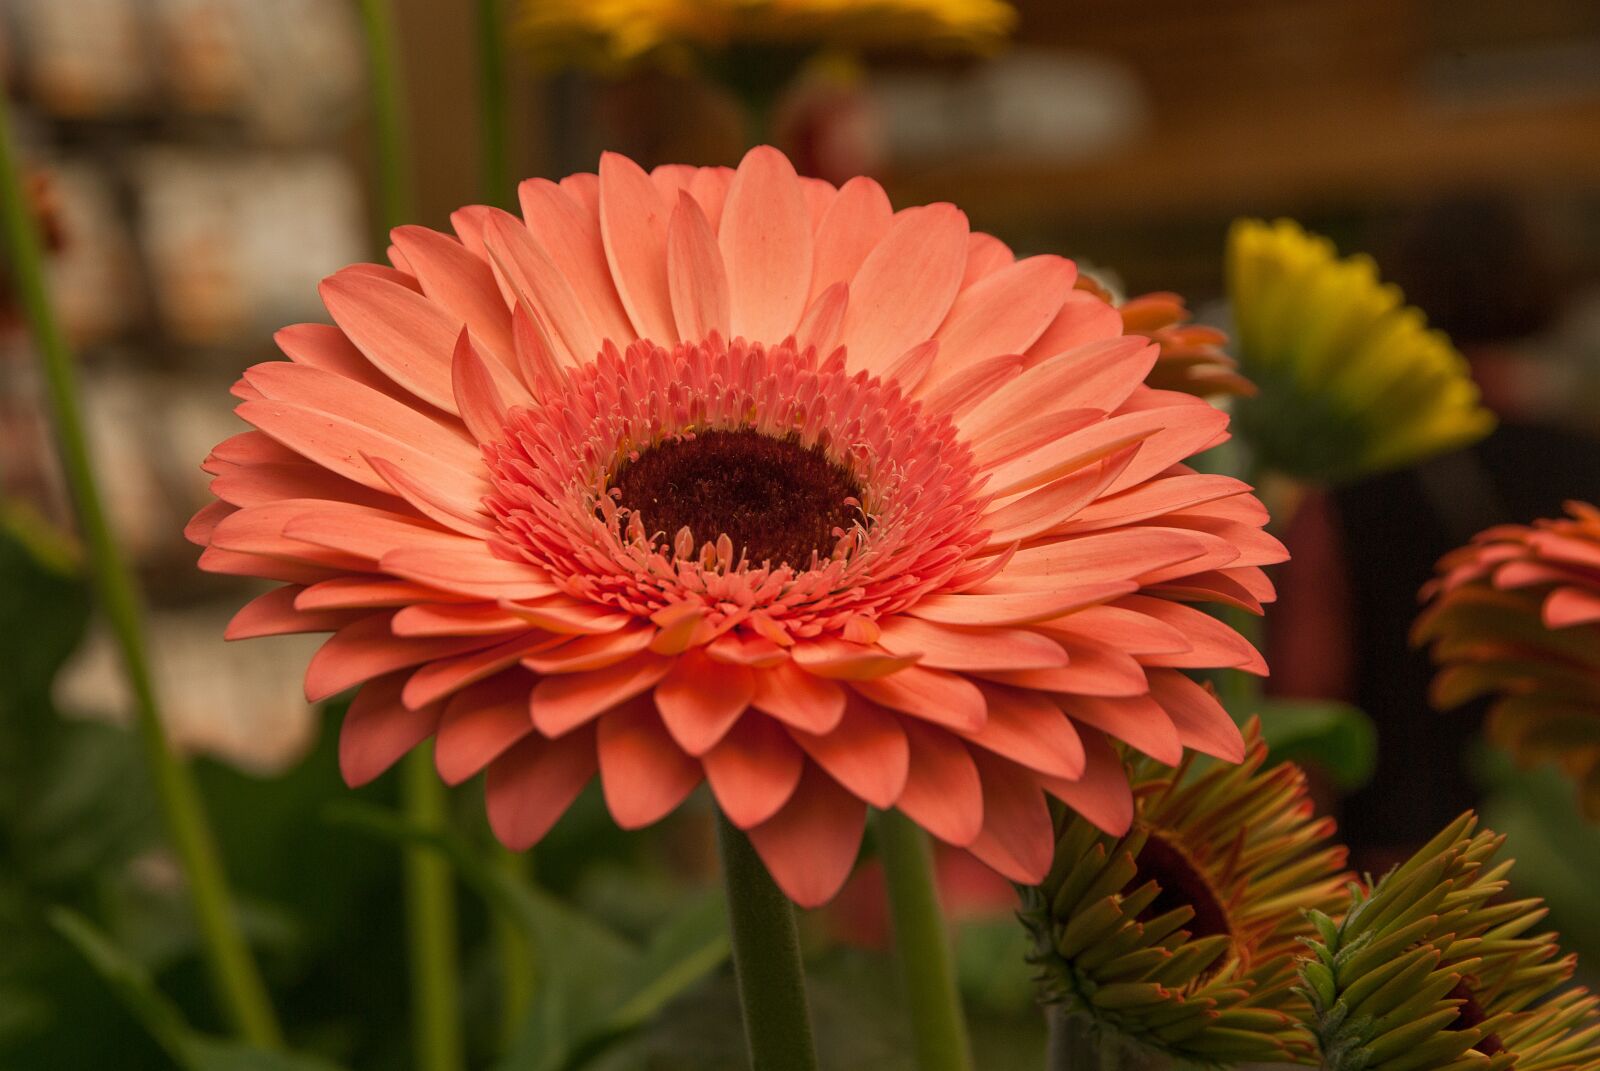 Pentax K10D sample photo. Flower, gerbera, garden photography